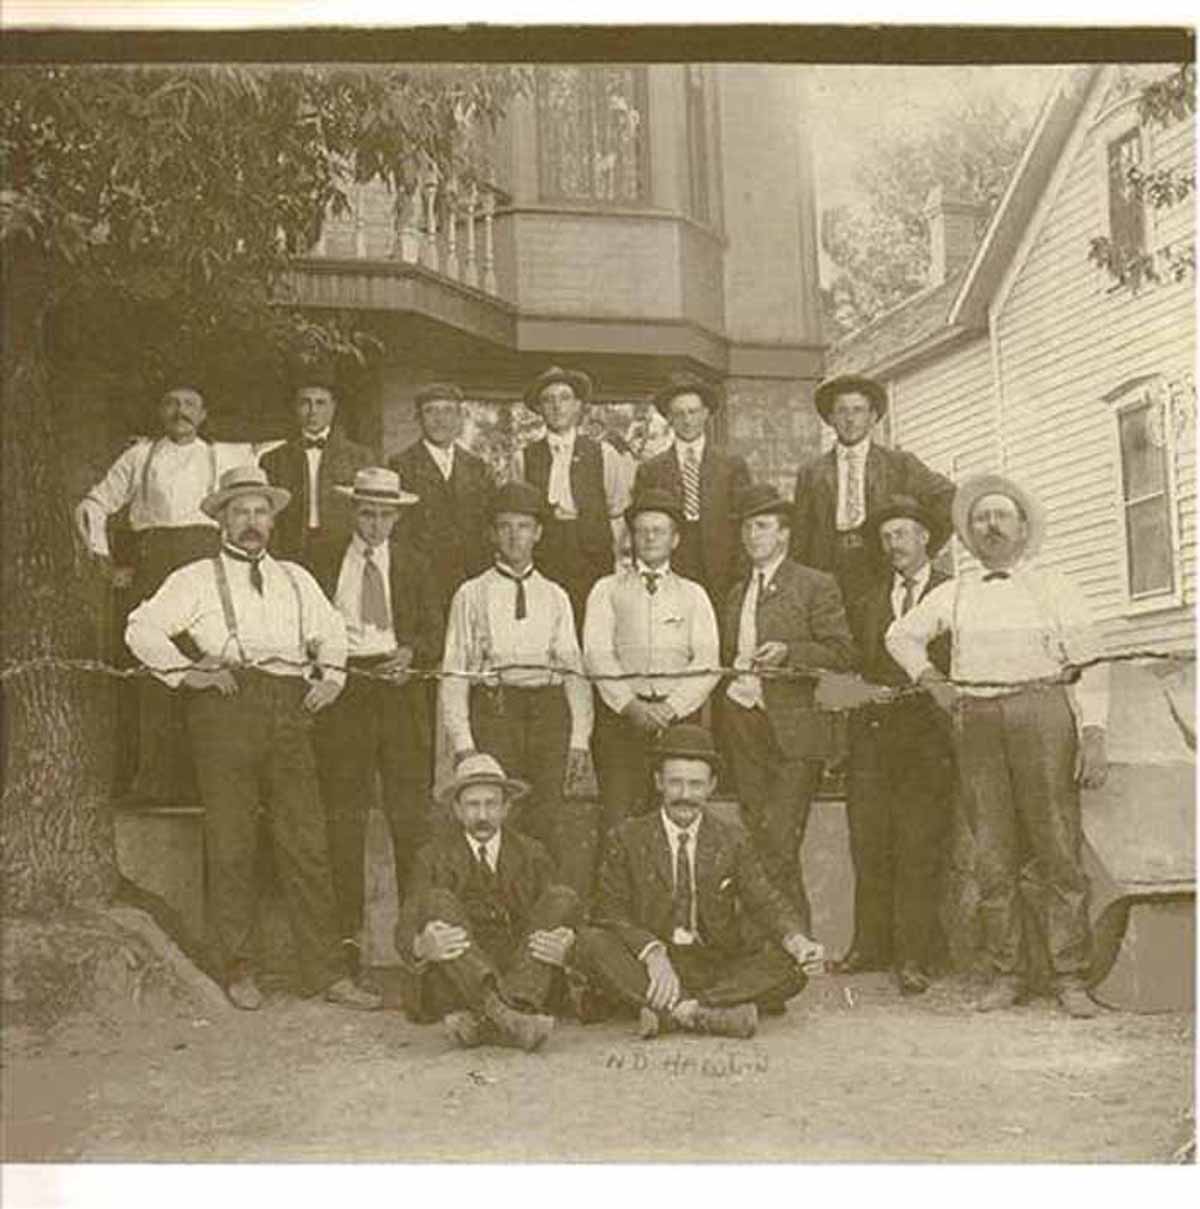 Unknown Group of Men, Kimballton, Audubon County, Iowa